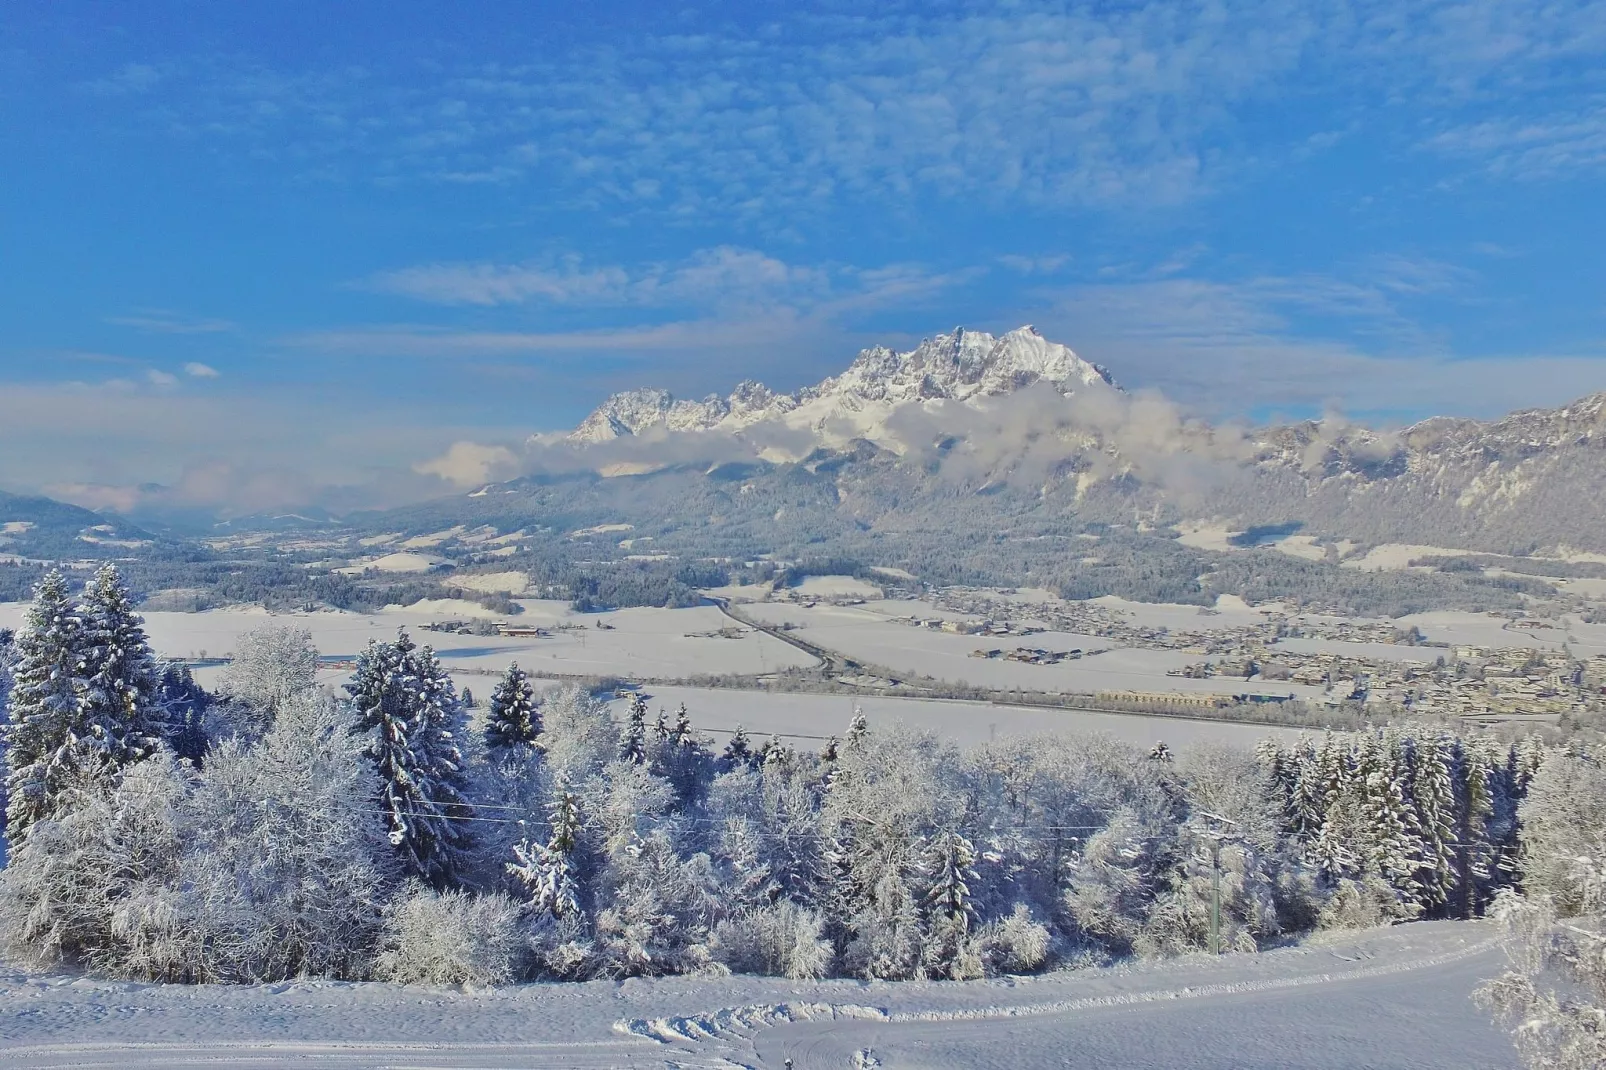 Berghof Webern-Uitzicht winter